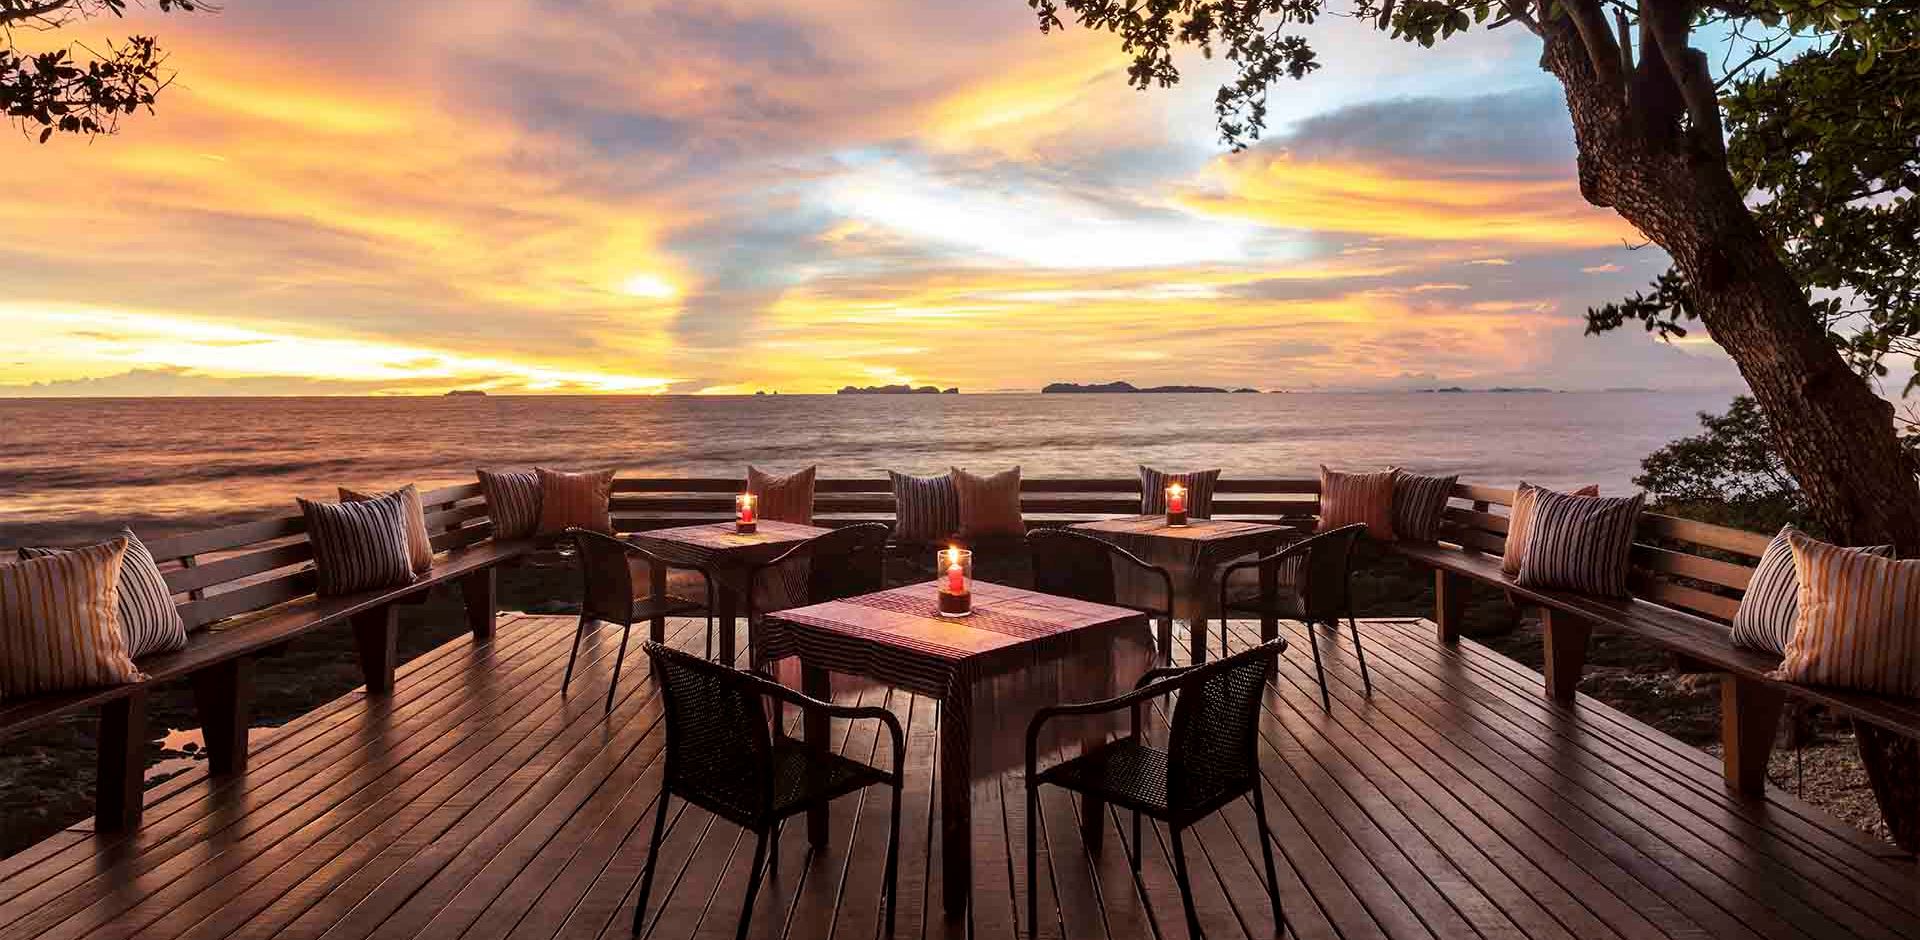 Thailand, Koh Lanta, Avani+ Koh Lanta Resort, Regga Bar Sunset